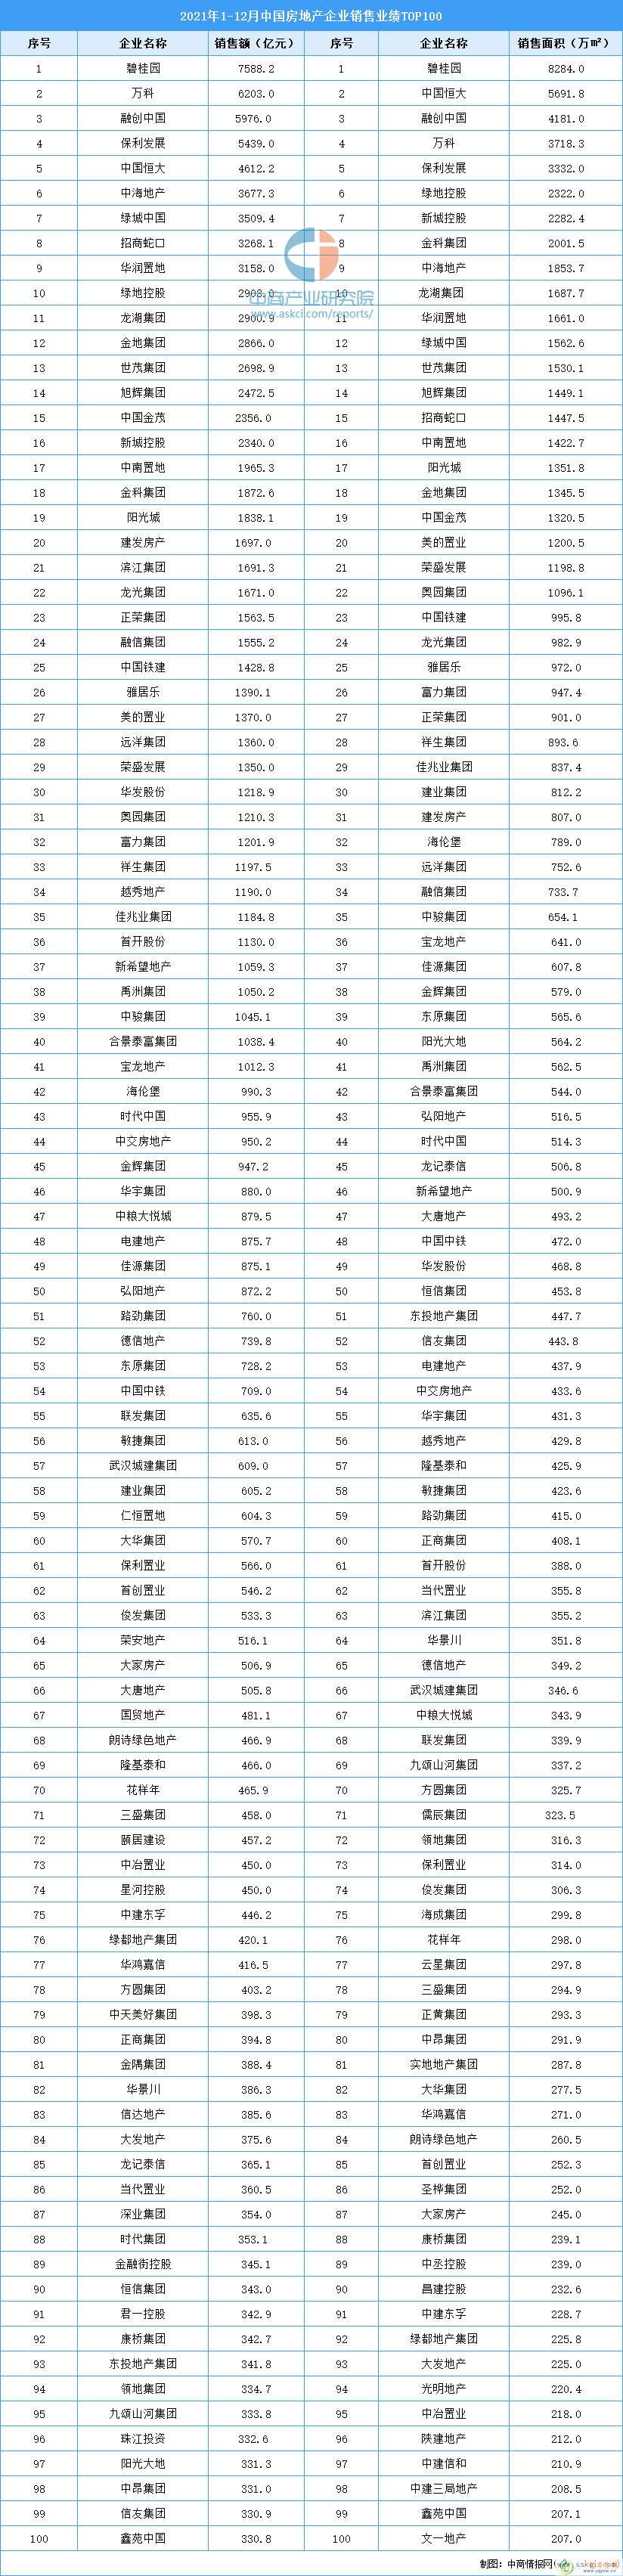 2021年1-12月中国房地产企业销售业绩TOP100